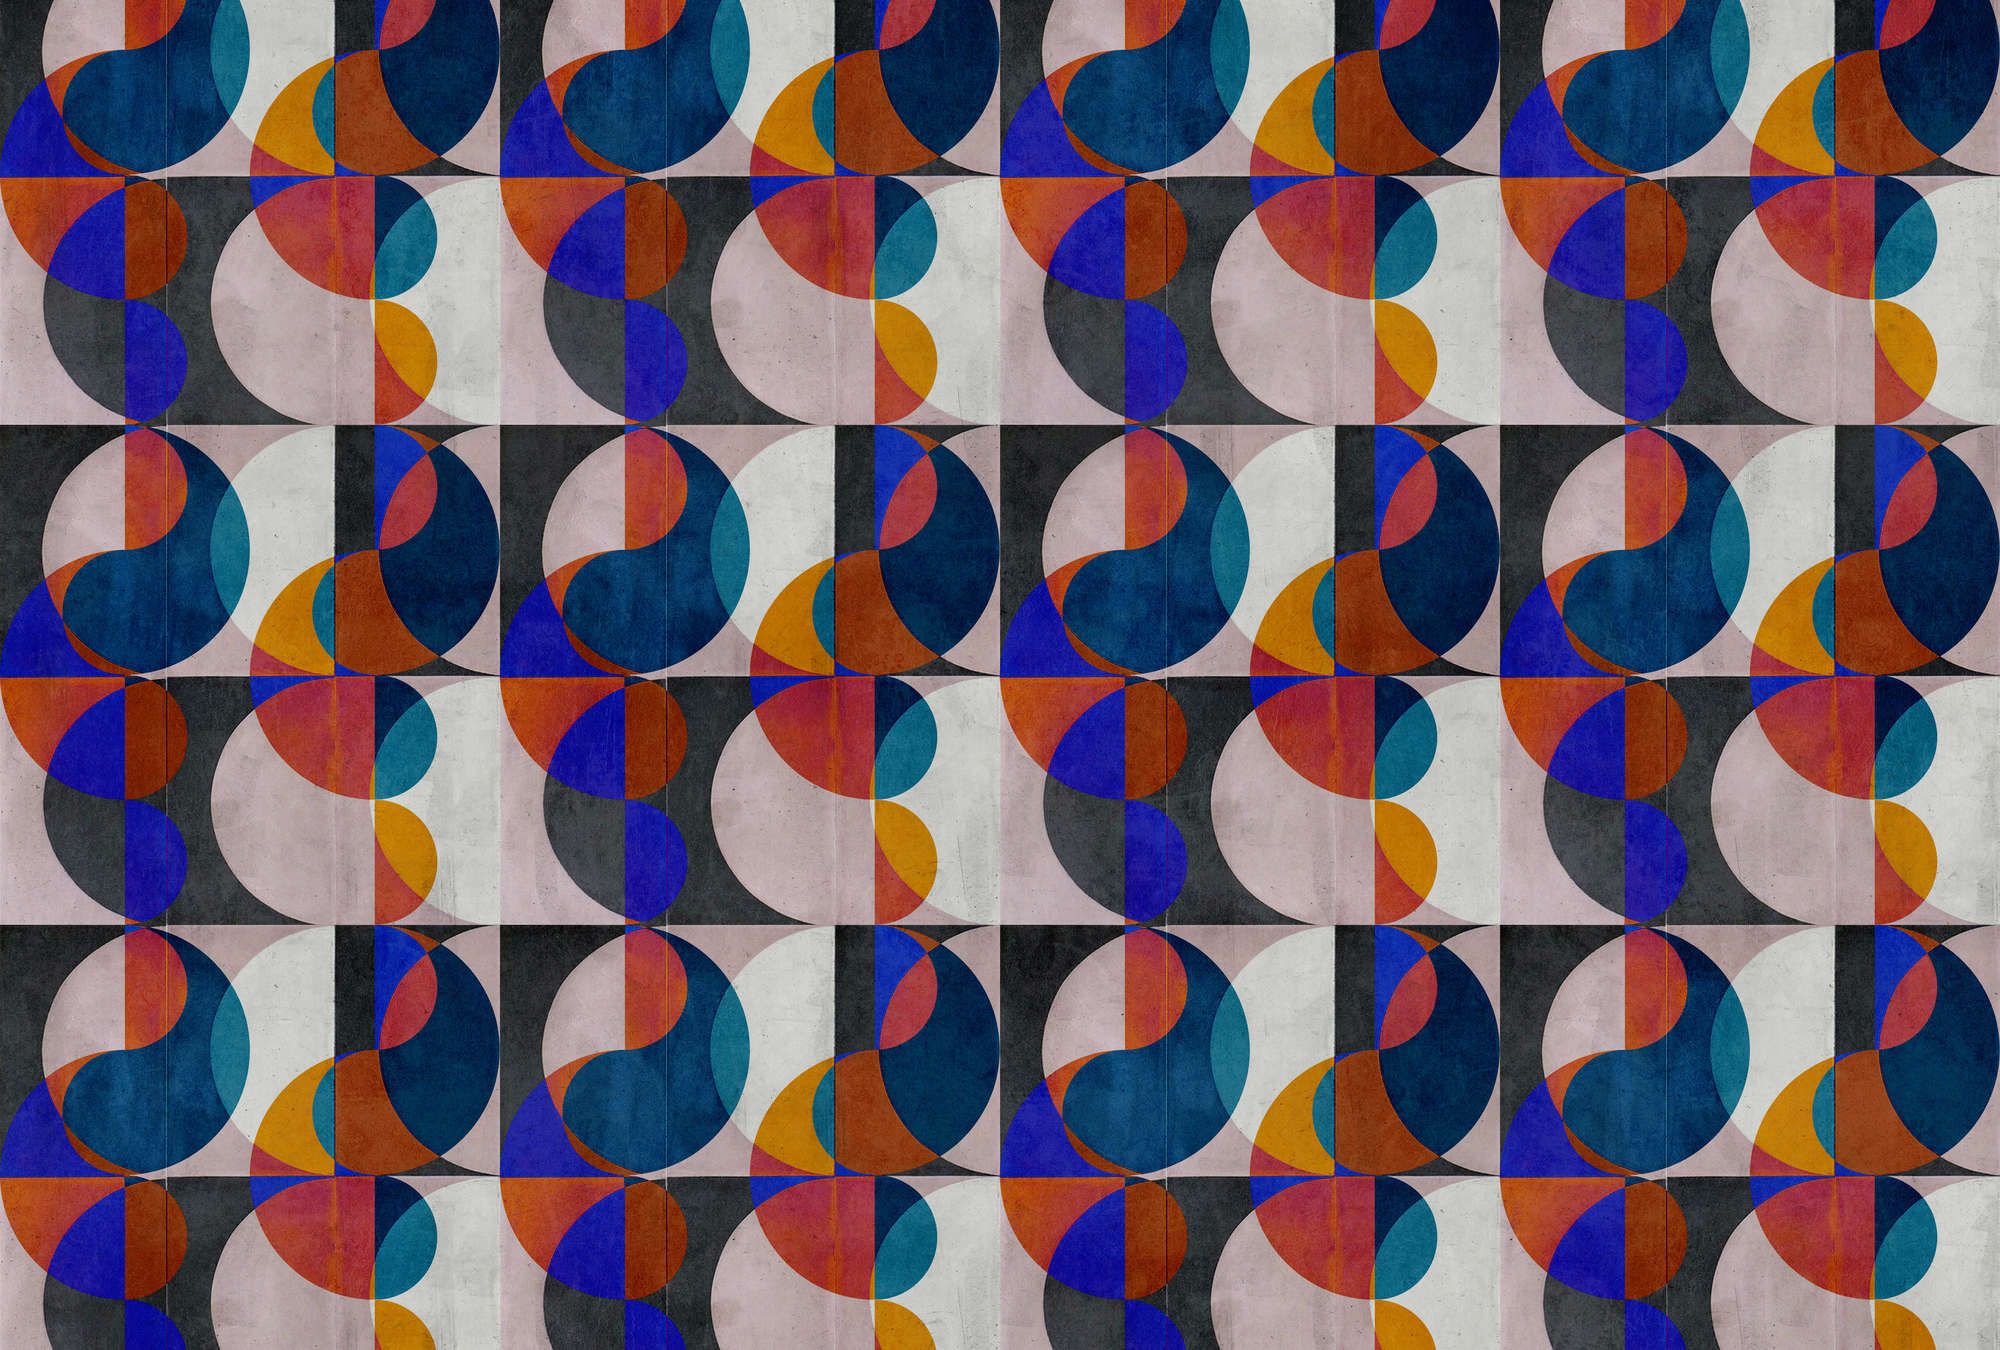             Fotomural »mia« - Motivo abstracto retro sobre textura de yeso de hormigón - colorido | Tela no tejida premium lisa, ligeramente brillante
        